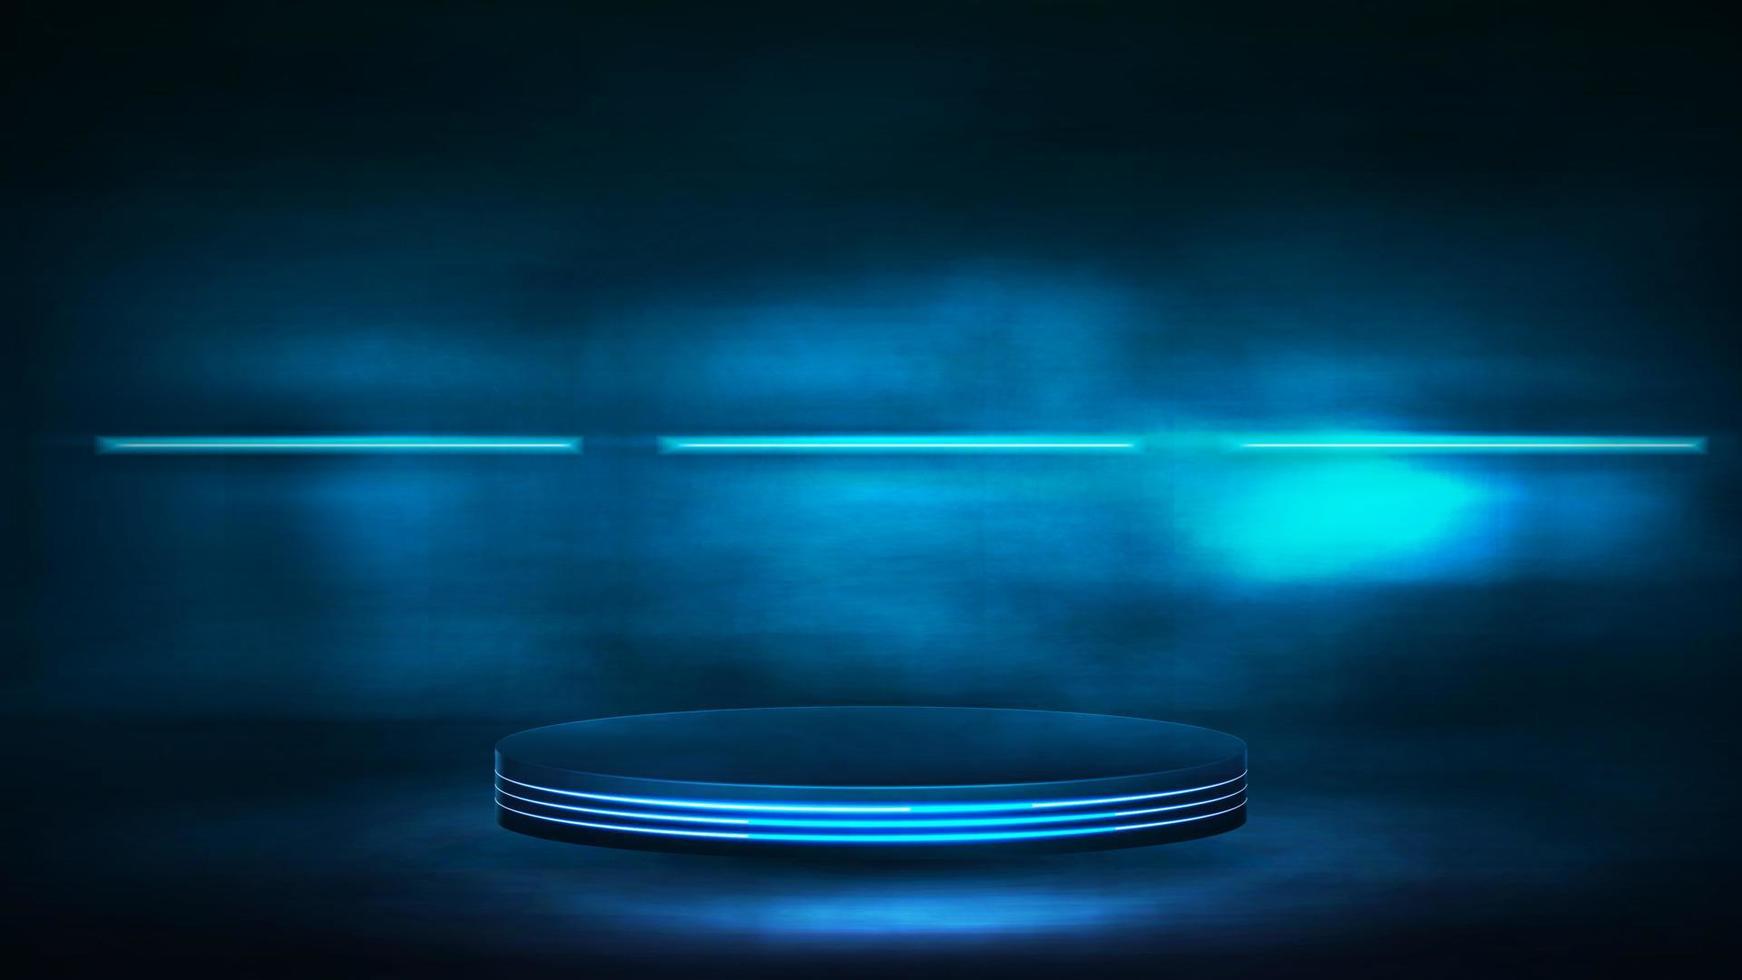 pódio escuro vazio para apresentação do produto, ilustração vetorial realista 3d. cena digital azul e escura com lâmpadas luminosas azuis neon vetor